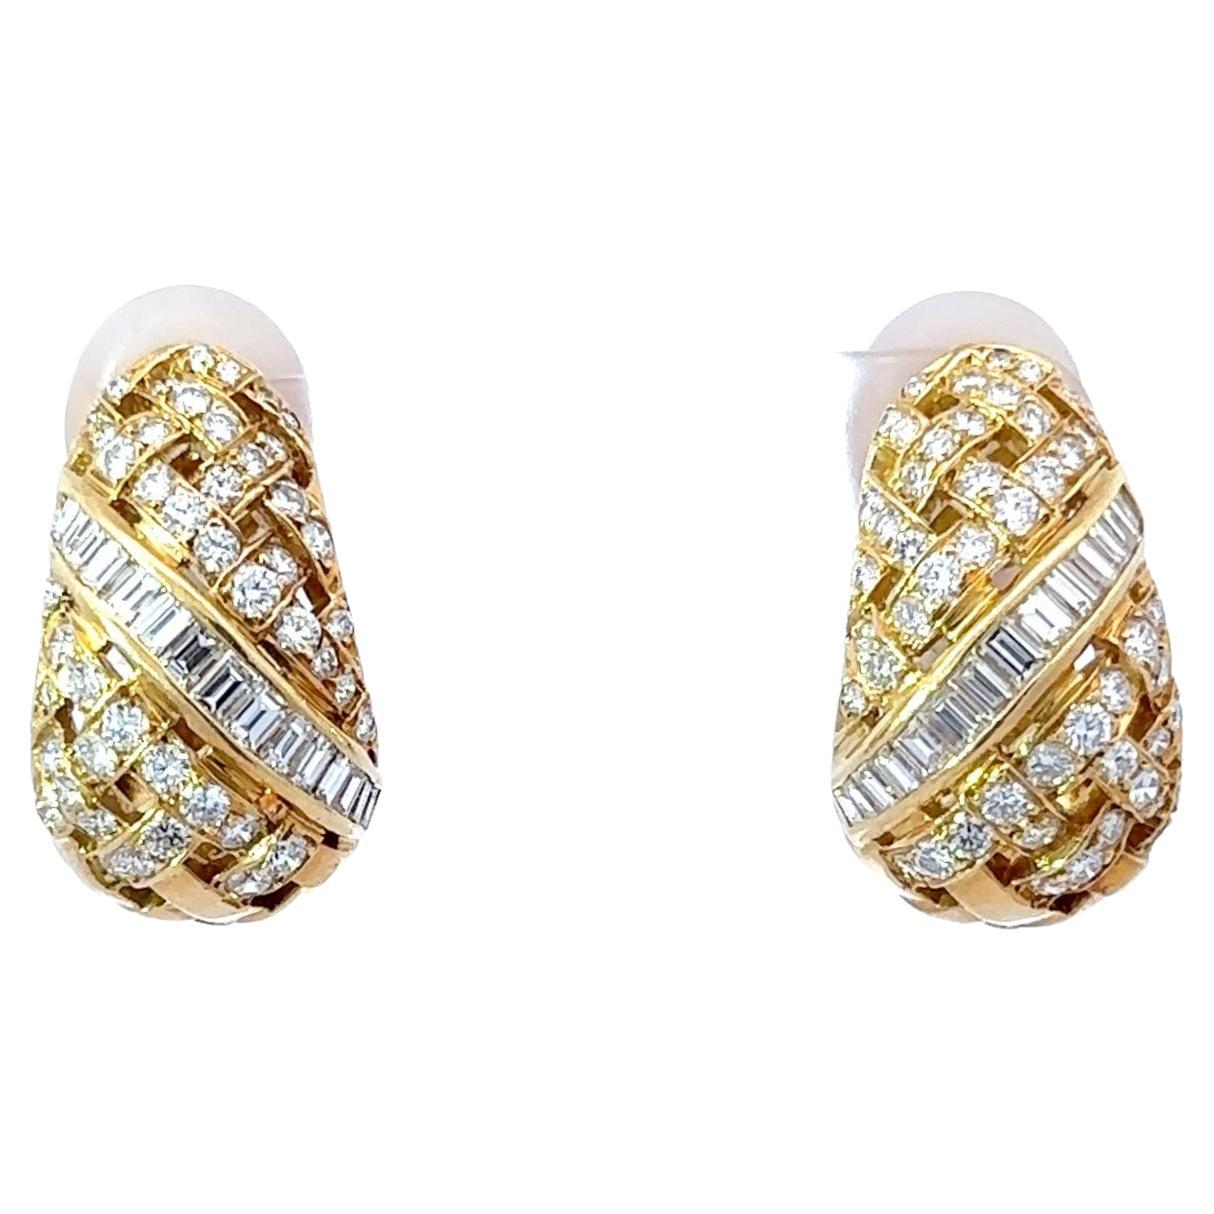 Tiffany und Co. Gold- und Diamant-Ohrringe